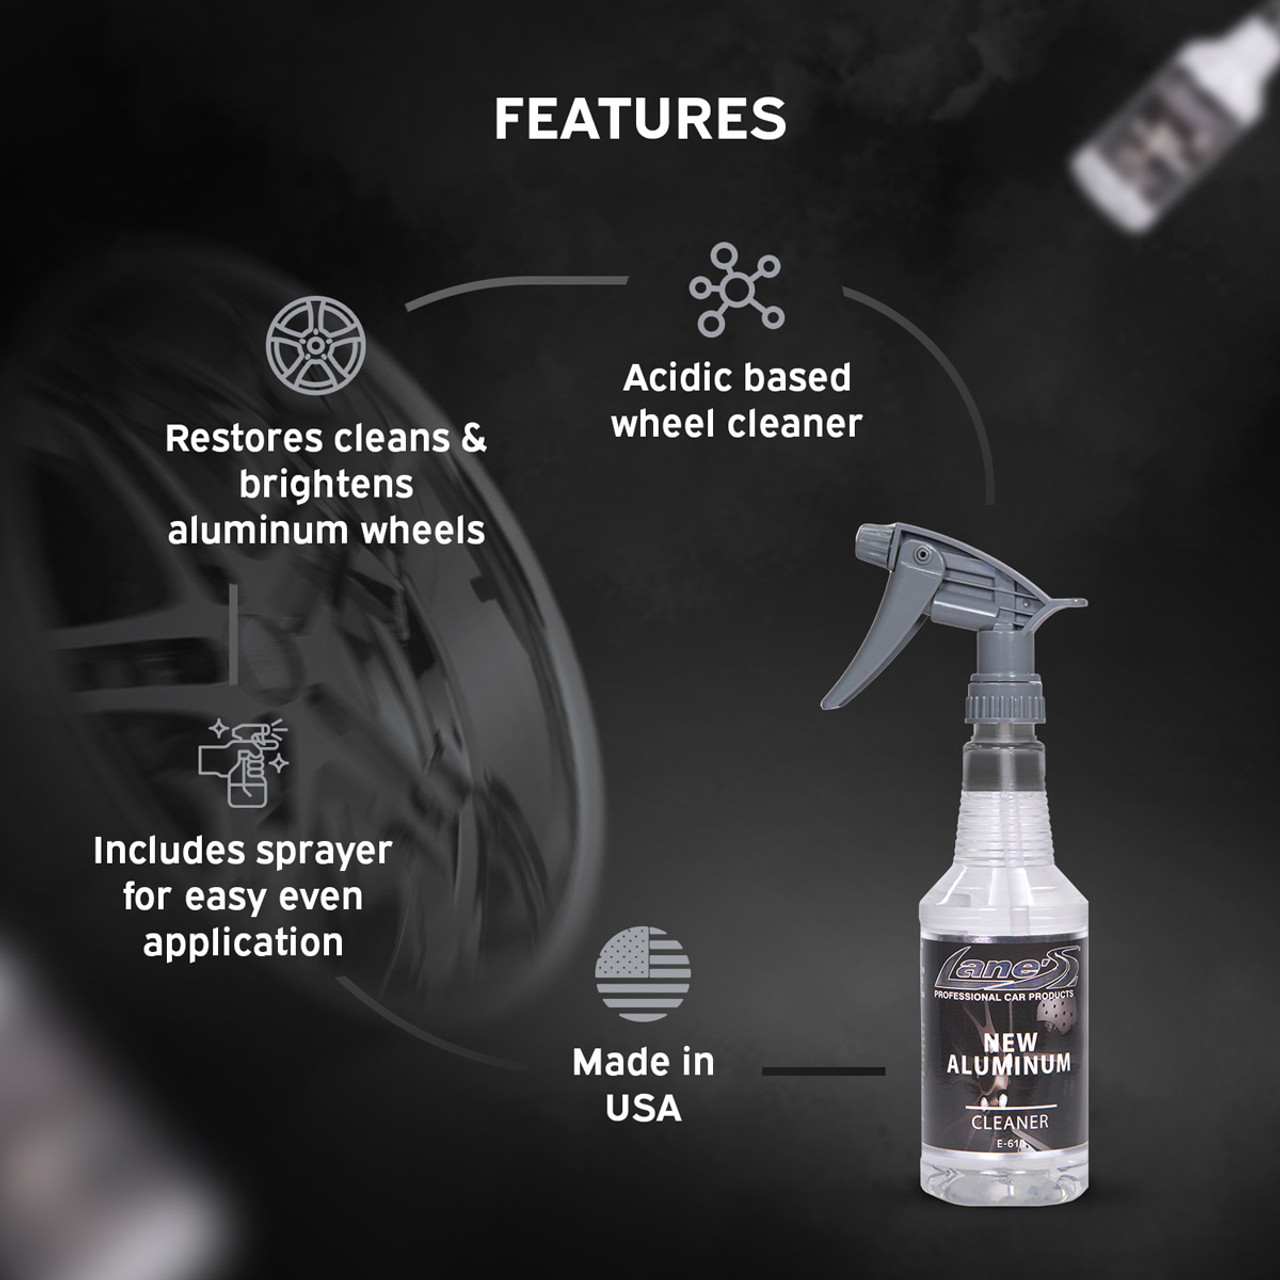 Lane's Aluminum Wheel Cleaner - Best Acidic Wheel Cleaner on the